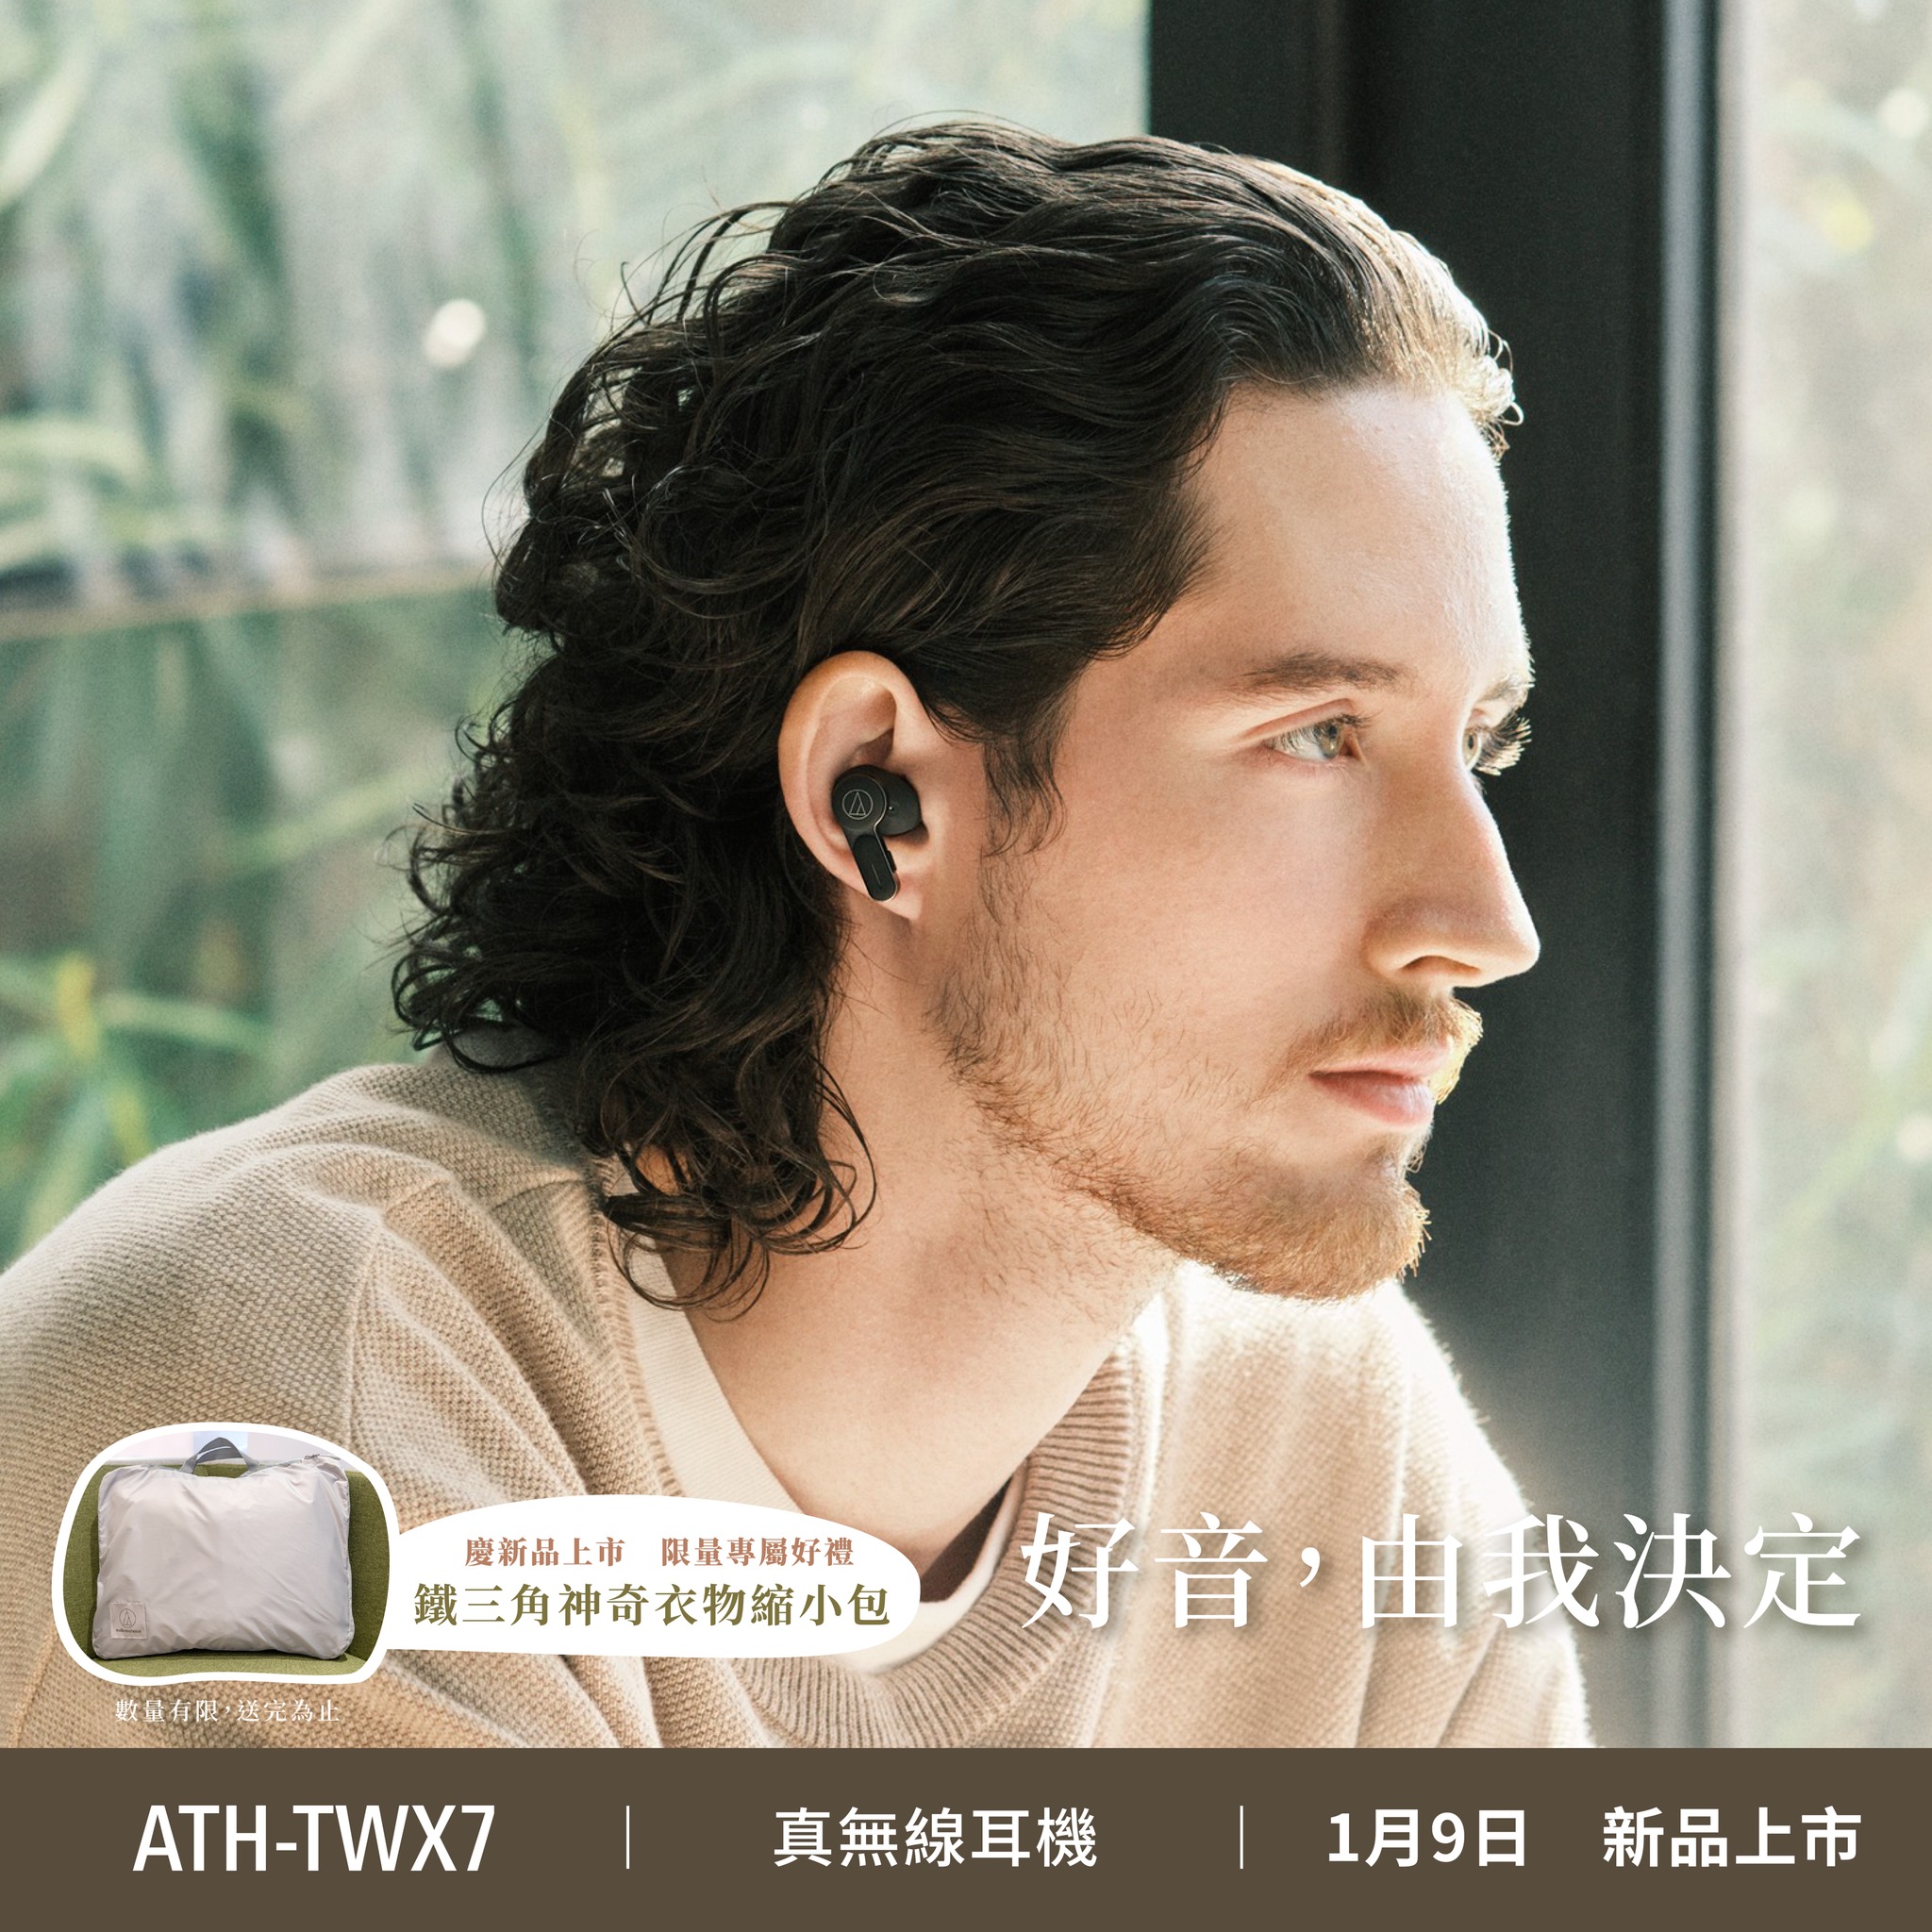 真無線耳機ATH-TWX7 專屬好禮 鐵三角神奇衣物縮小包， 將更多的行李空間還給自己，珍惜屬於自己的個人空間與時間。 | 恩典電腦官方網站